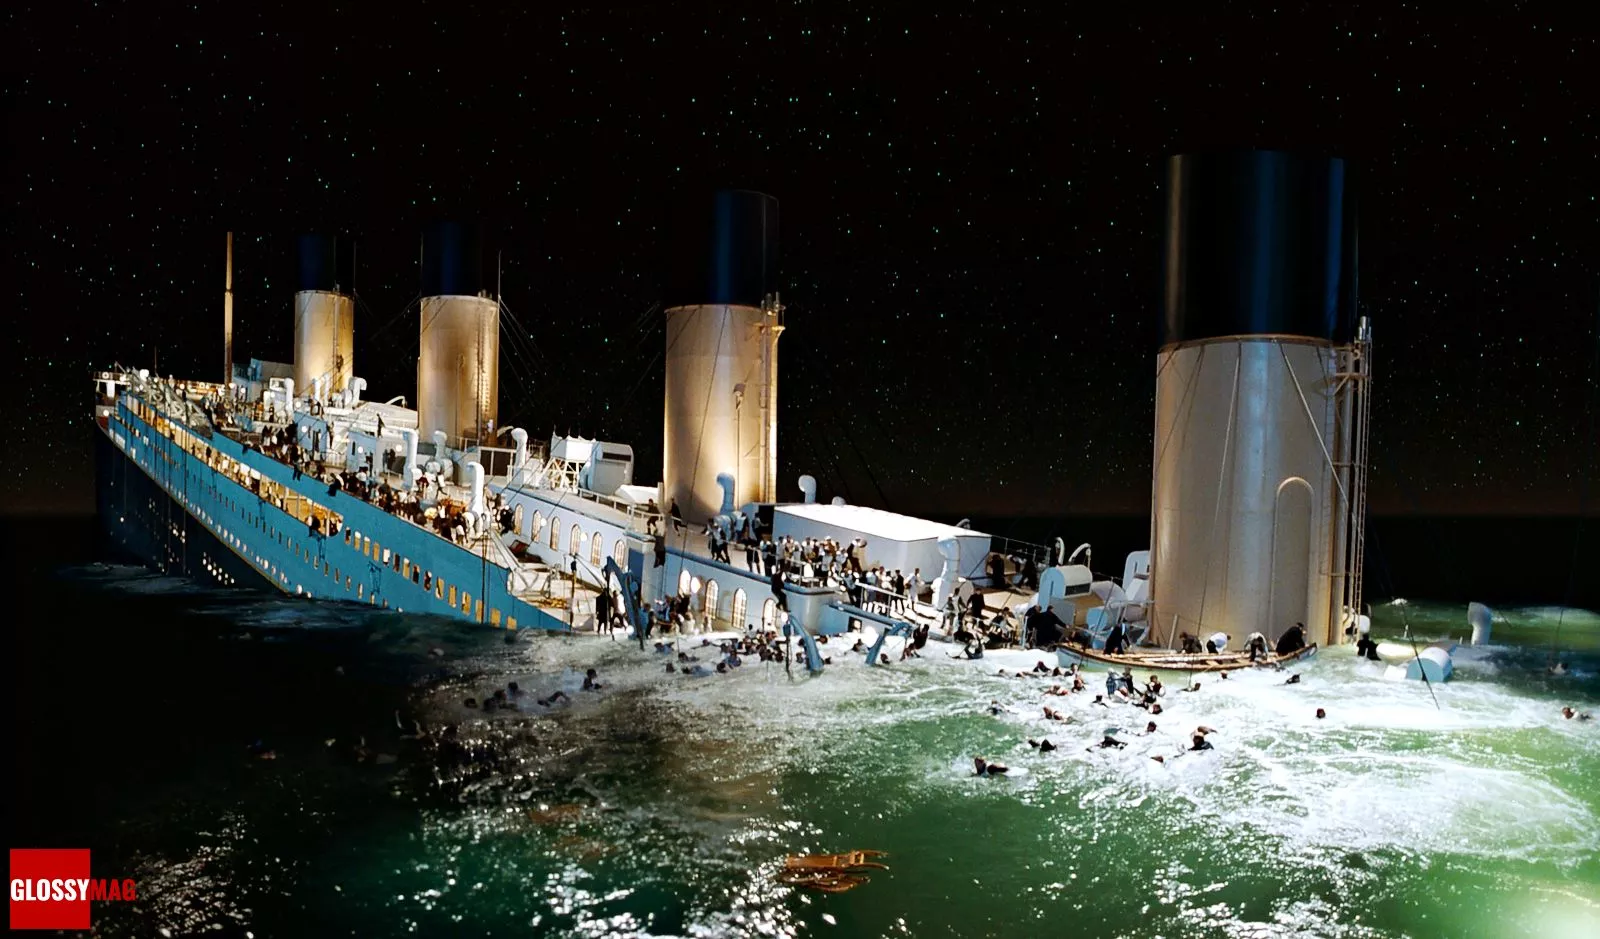 Обновленный «Титаник» в формате 3D 4K HDR, фото 2